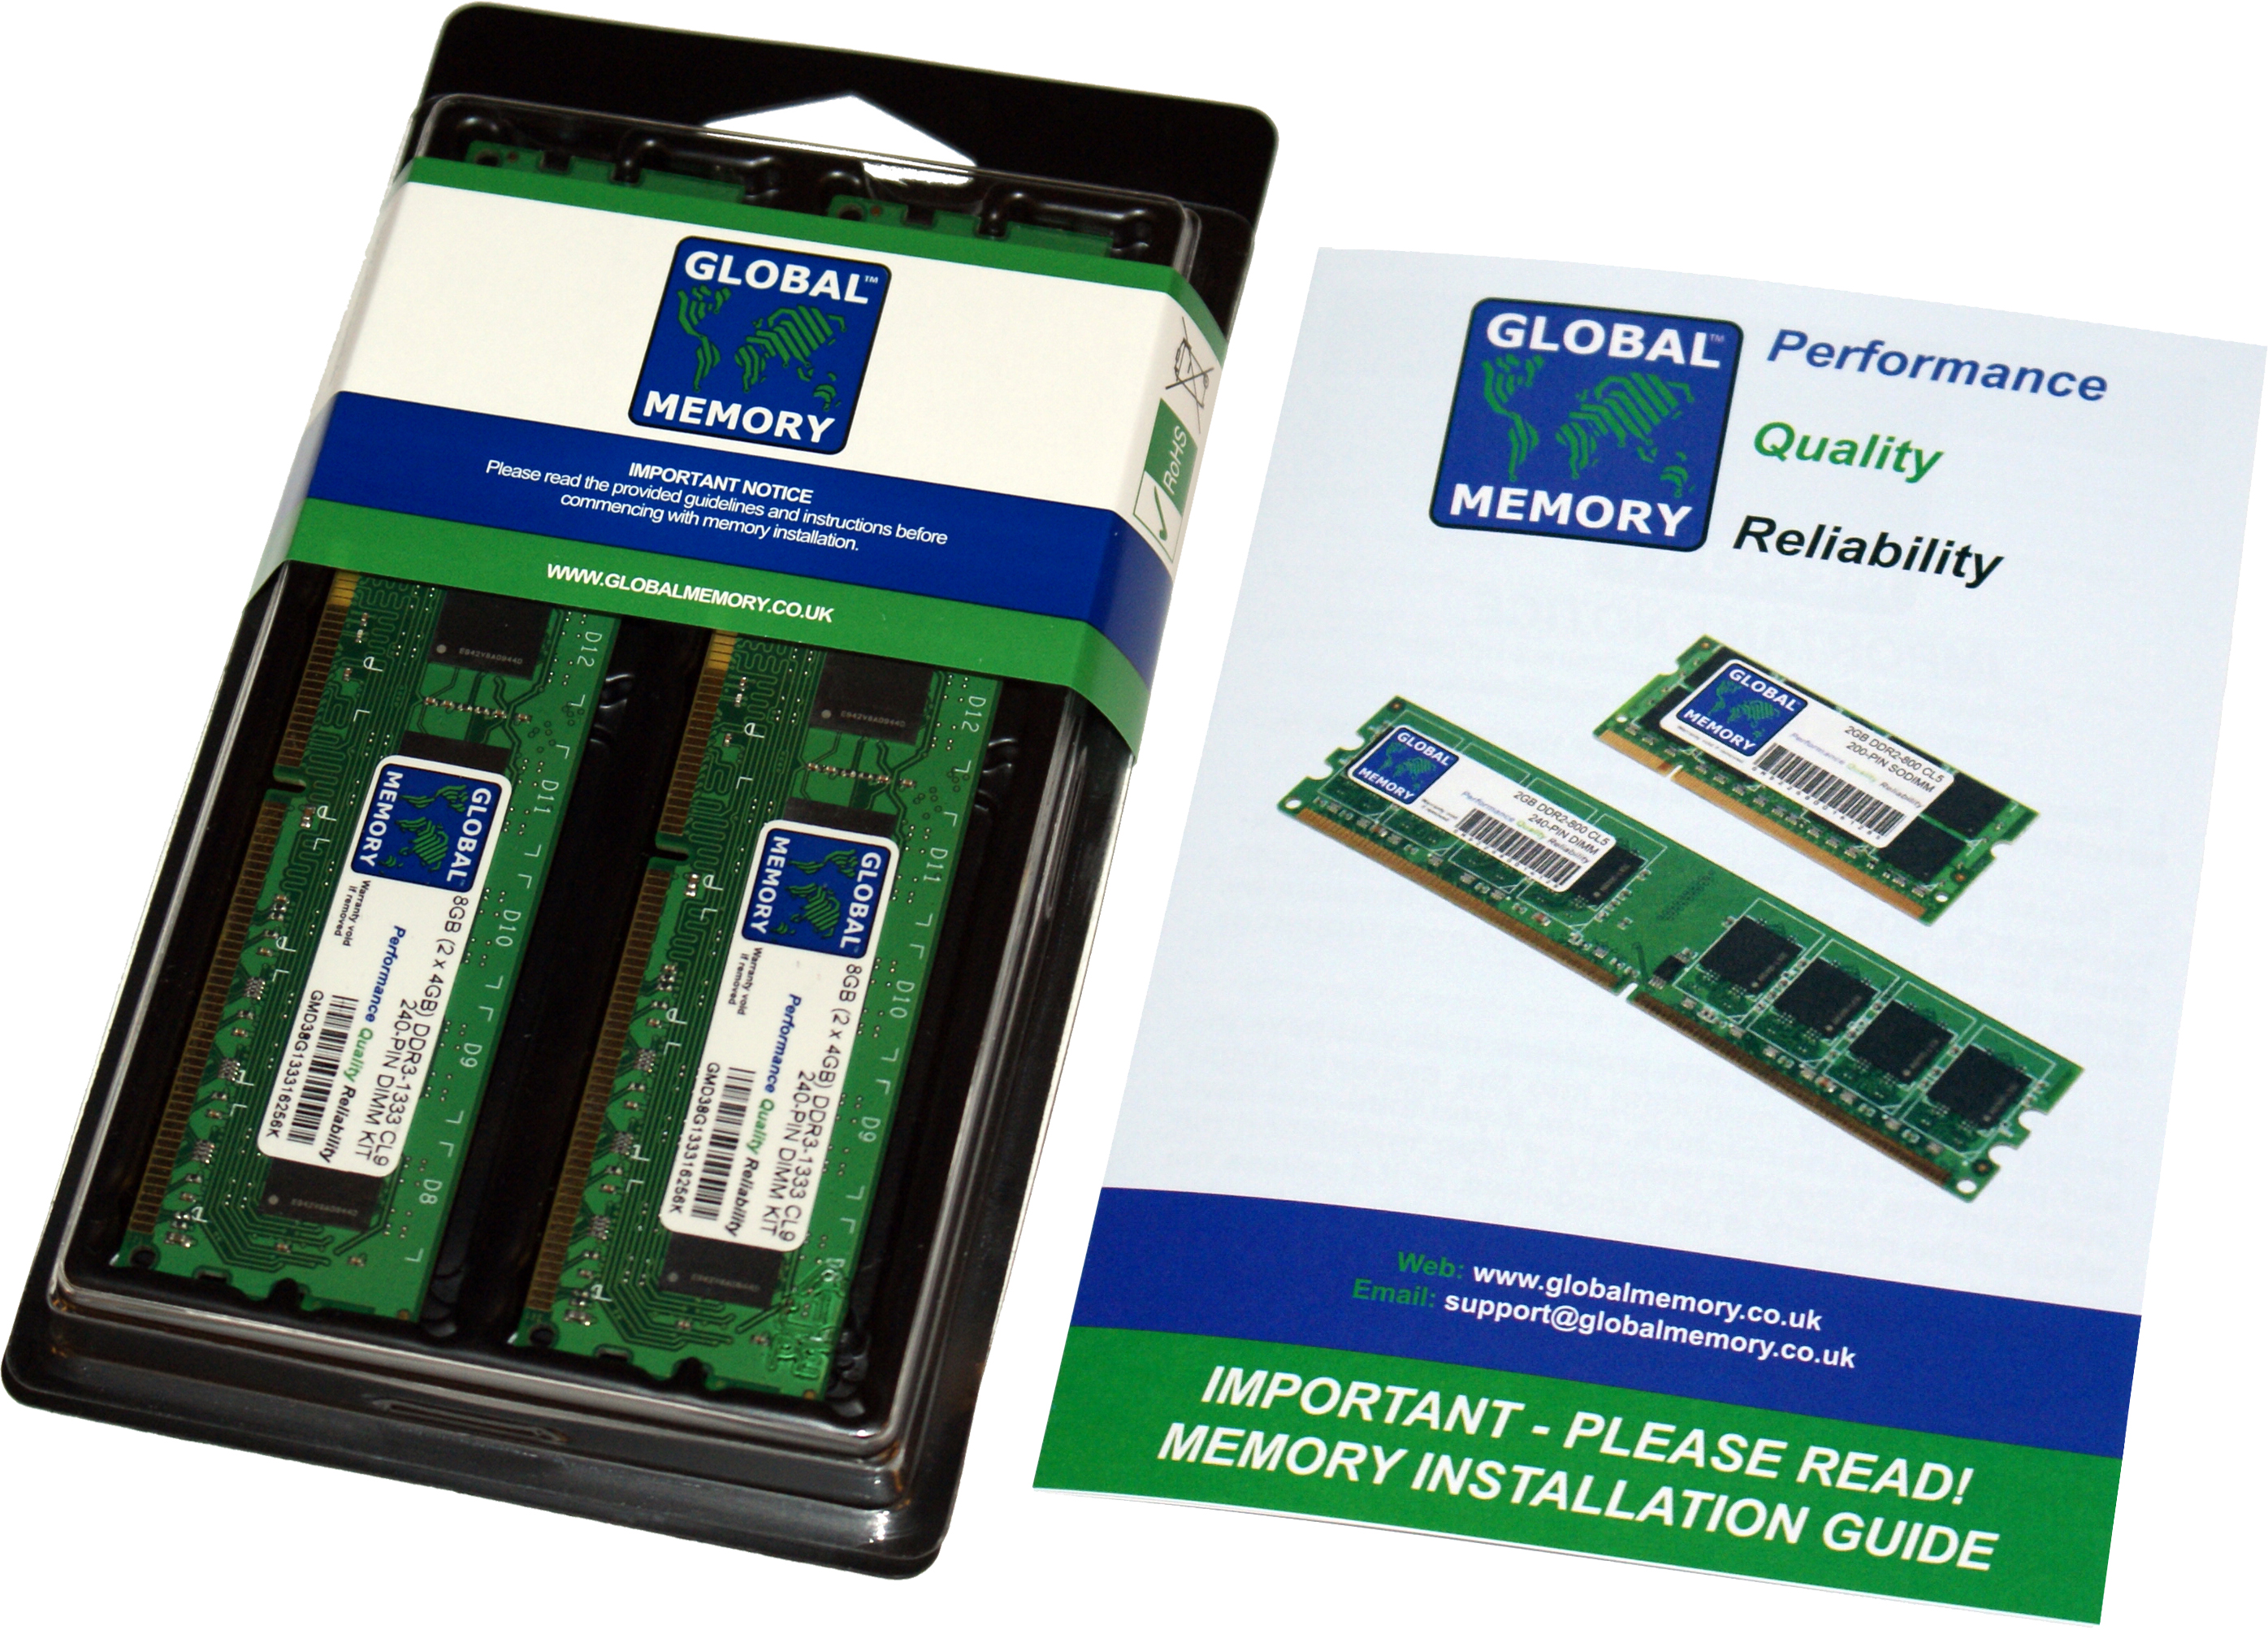 8GB (2 x 4GB) DDR4 2666MHz PC4-21300 288-PIN DIMM MEMORY RAM KIT FOR HEWLETT-PACKARD PC DESKTOPS